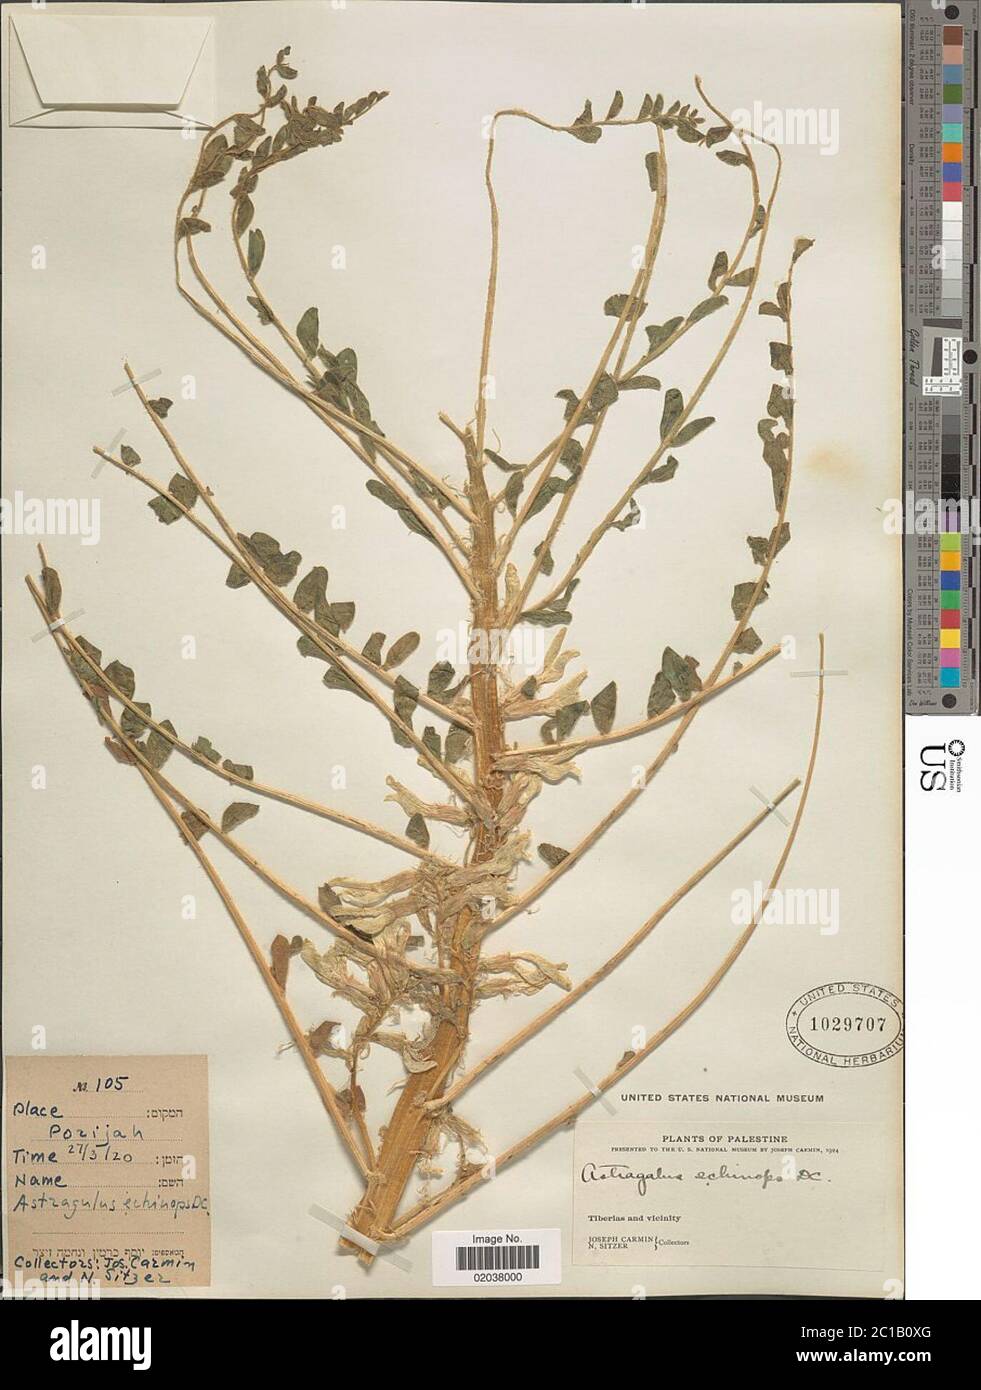 Astragalus echinops Boiss ex Aucher Astragalus echinops Boiss ex Aucher. Stock Photo